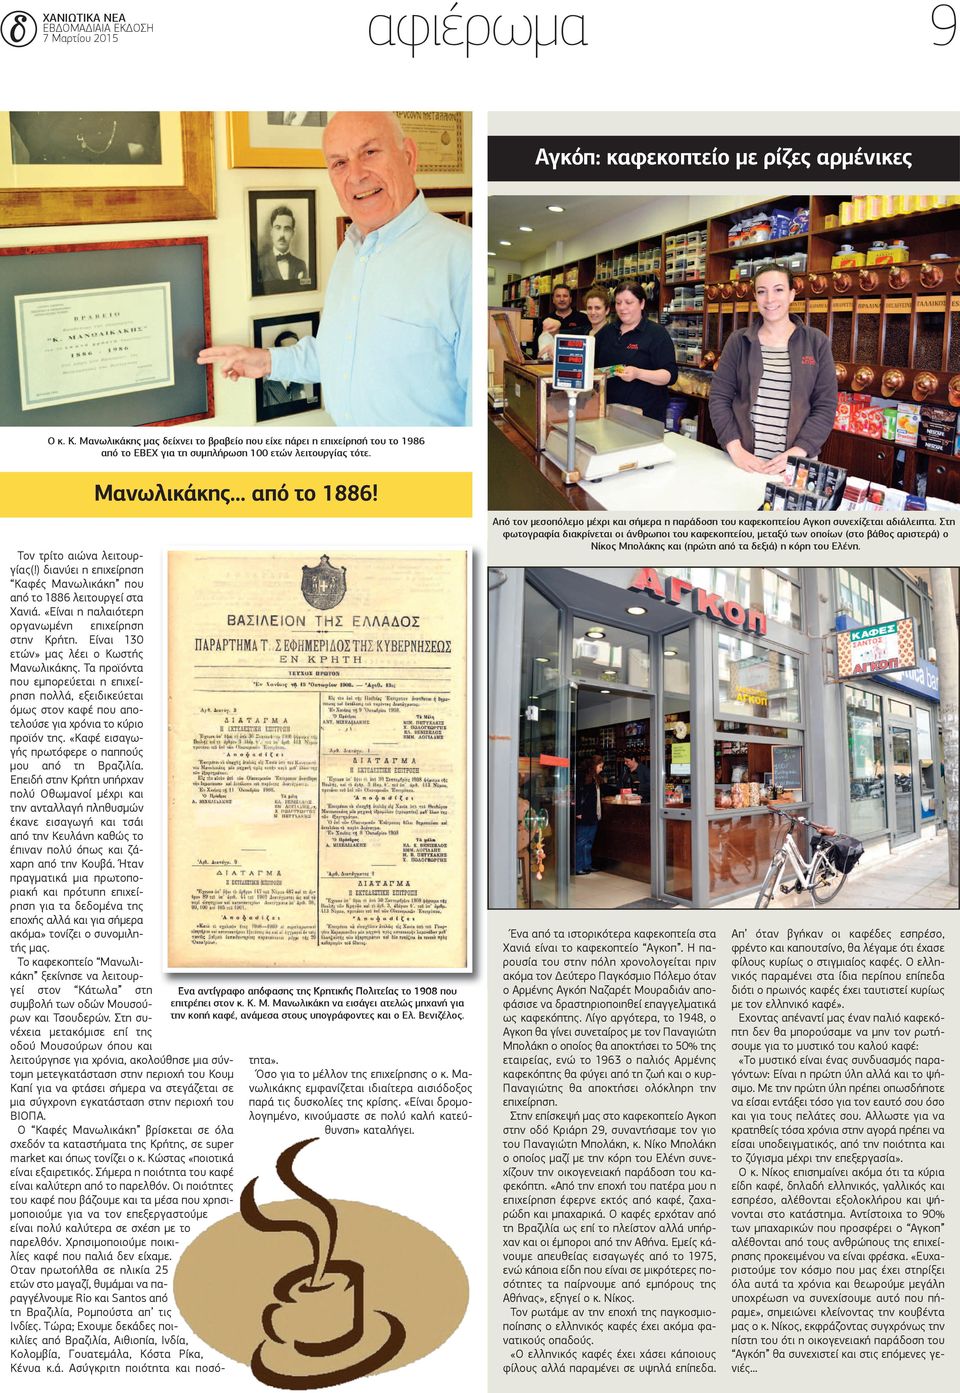 ) διανύει η επιχείρηση Καφές Μανωλικάκη που από το 1886 λειτουργεί στα Χανιά. «Είναι η παλαιότερη οργανωμένη επιχείρηση στην Κρήτη. Είναι 130 ετών» μας λέει ο Κωστής Μανωλικάκης.